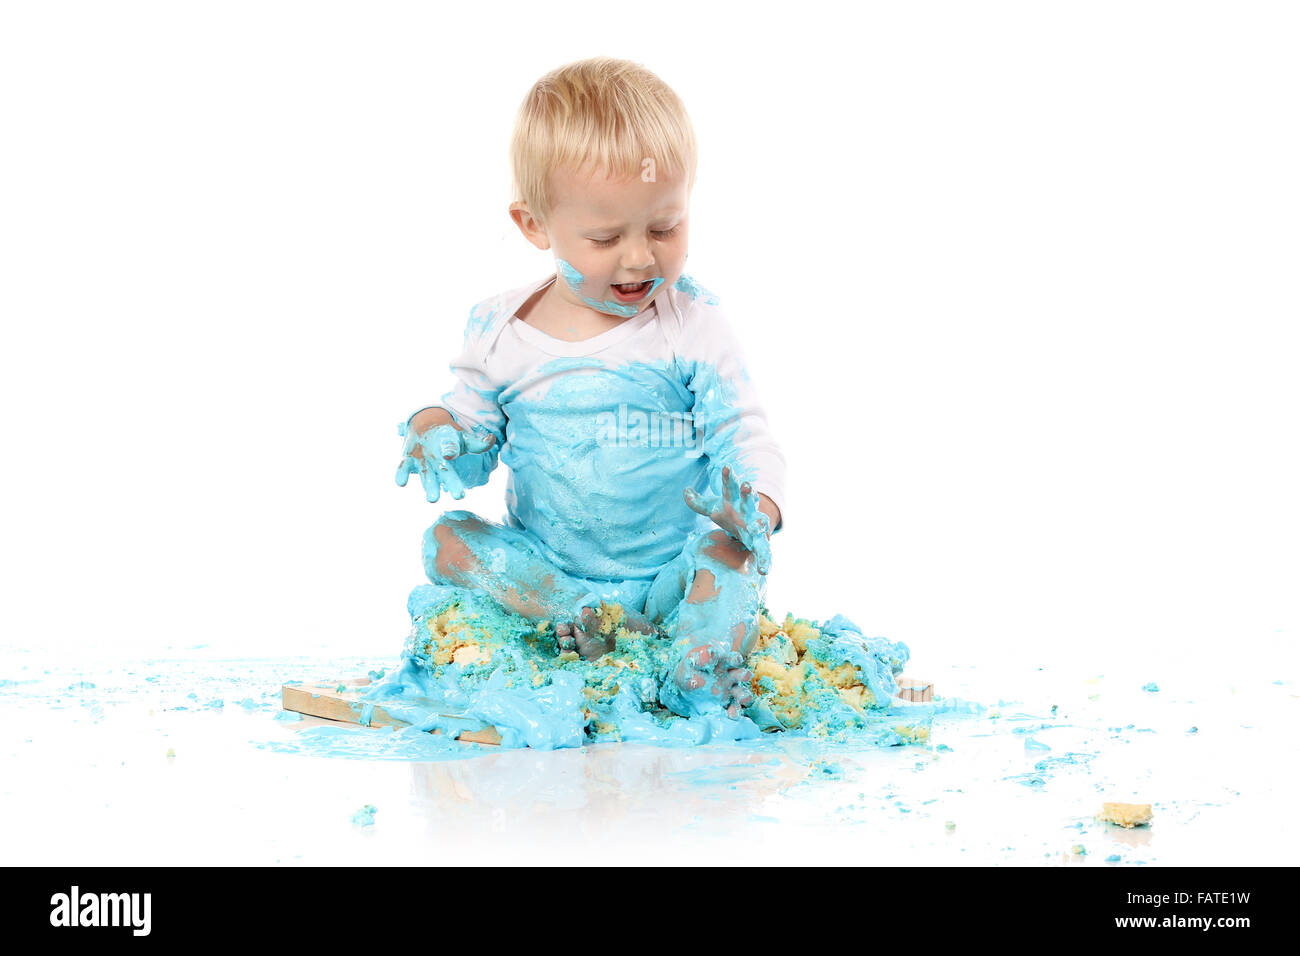 Ein einjähriges Baby junge Zerschlagung einer blauen Geeiste Geburtstagstorte auf einem Holzbrett. Bild wird auf einem weißen Hintergrund isoliert. Stockfoto